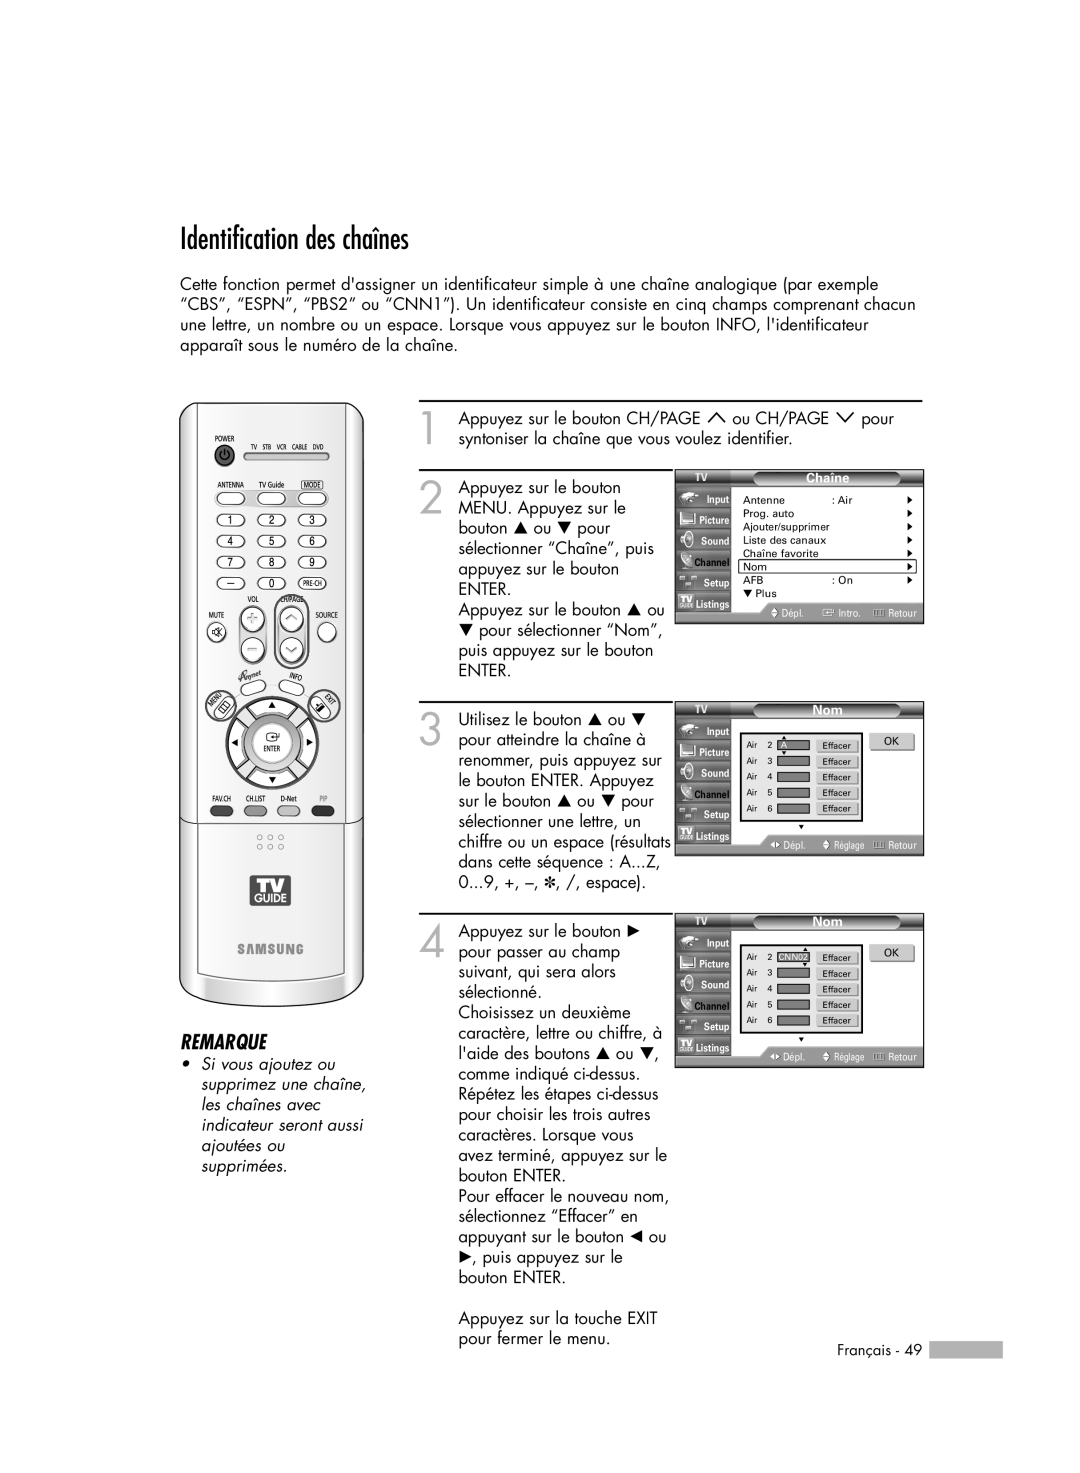 Samsung HL-R5078W, HL-R6178W, HL-R5678W, HL-R7178W manual Identification des chaînes, Remarque, Chaîne 